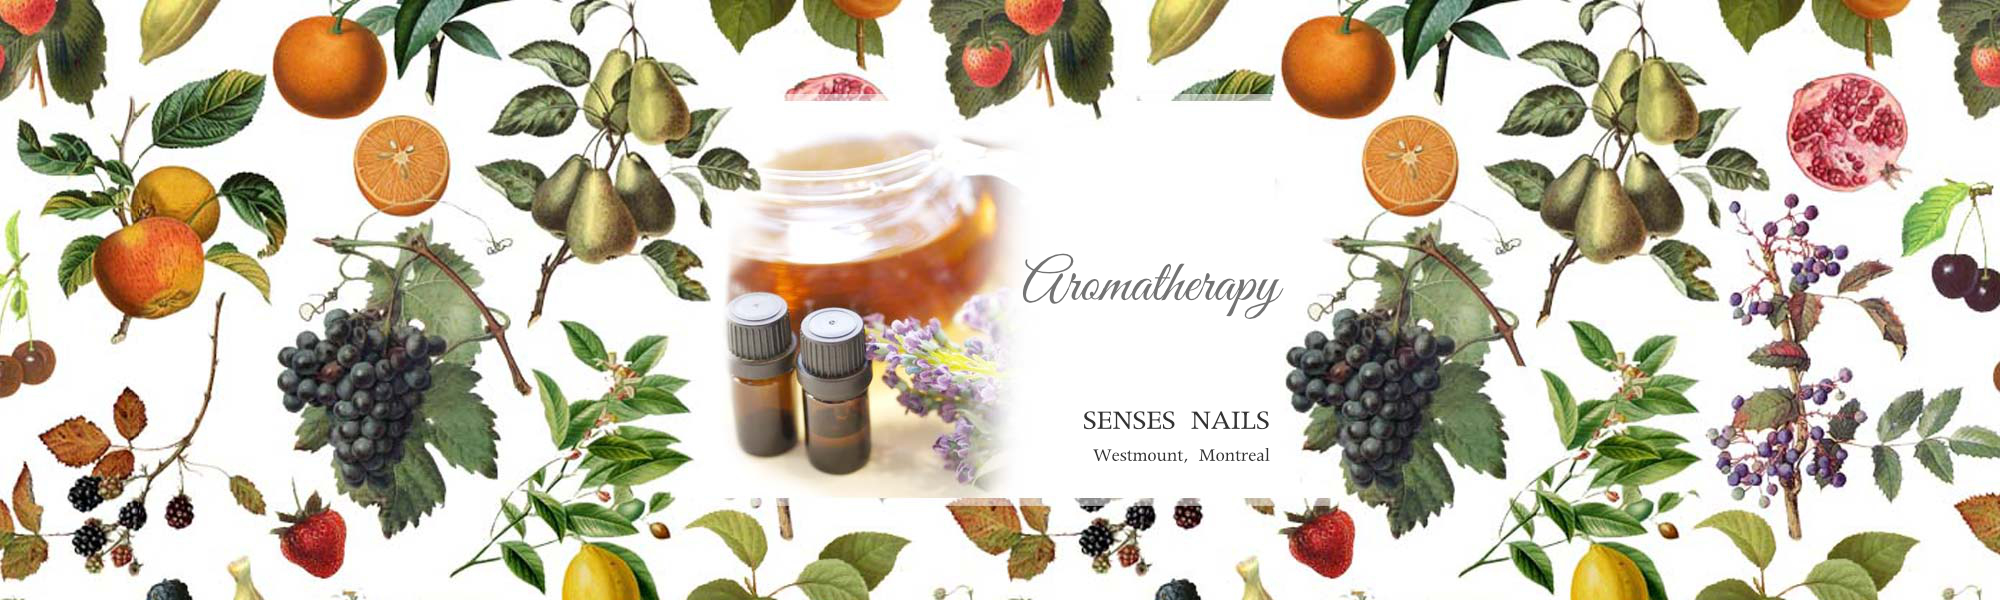 SENSES NAILS Aromatherapy